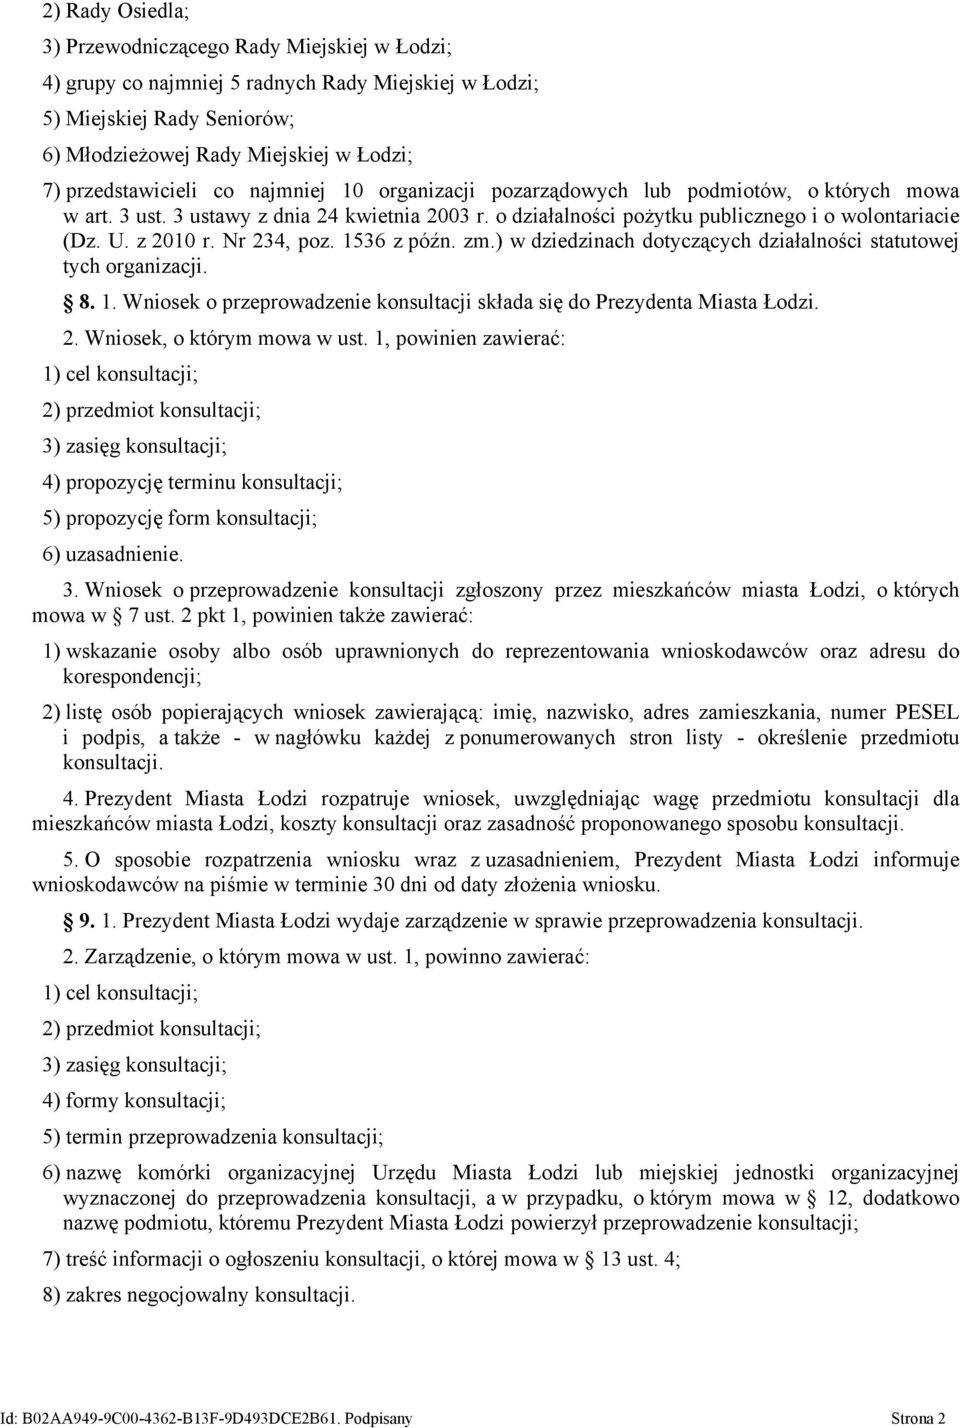 z 2010 r. Nr 234, poz. 1536 z późn. zm.) w dziedzinach dotyczących działalności statutowej tych organizacji. 8. 1. Wniosek o przeprowadzenie konsultacji składa się do Prezydenta Miasta Łodzi. 2. Wniosek, o którym mowa w ust.